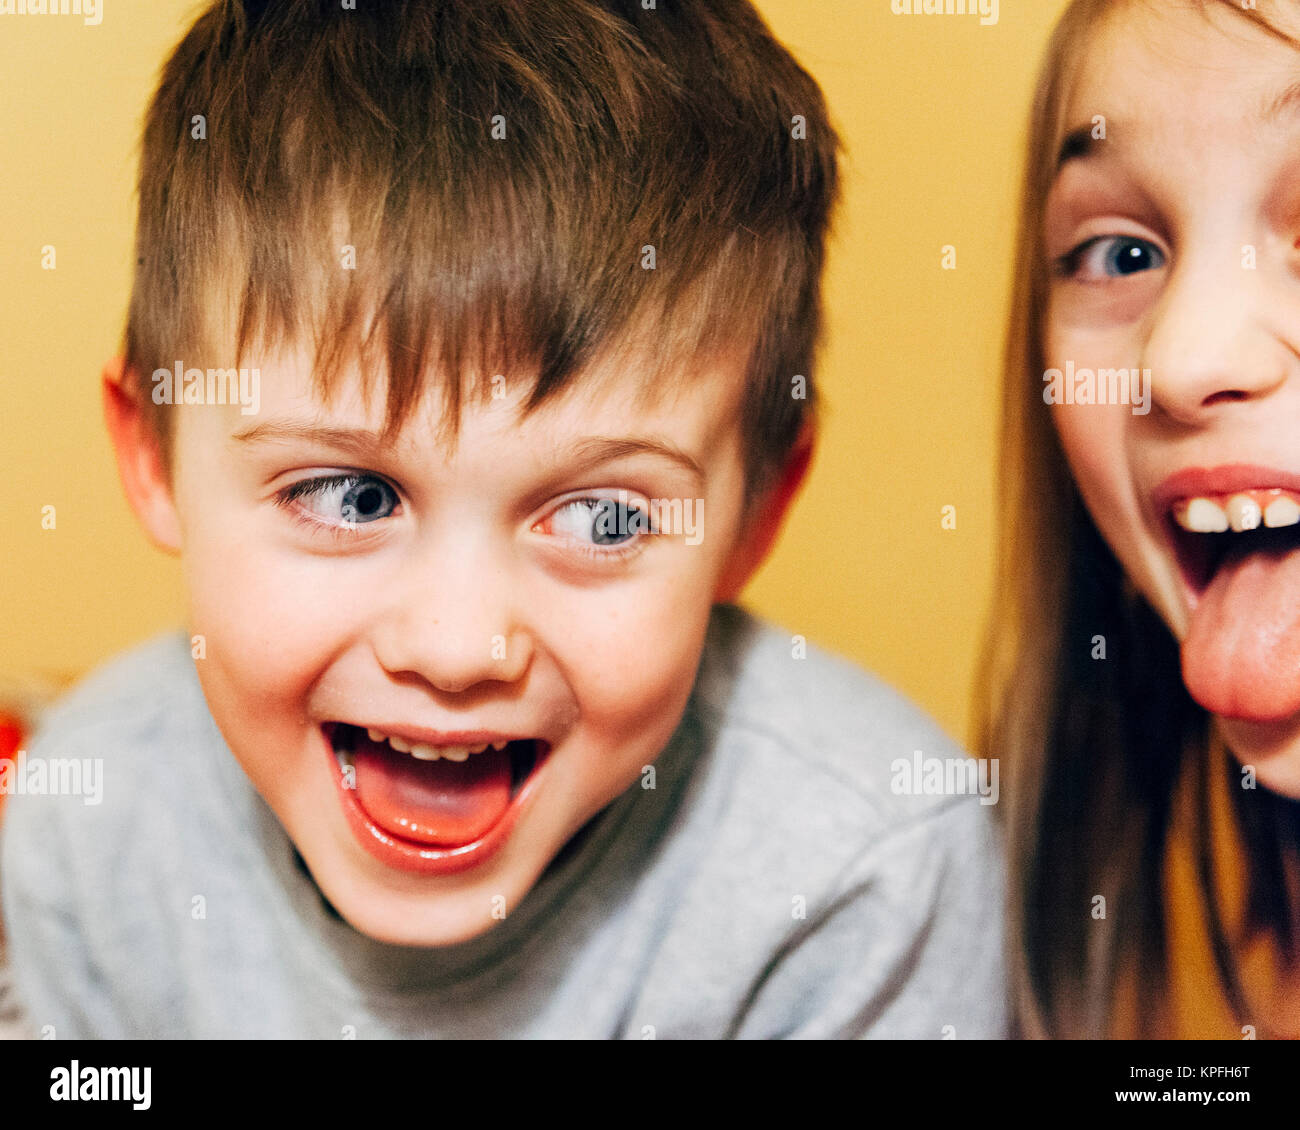 Candid Image der jungen kaukasischen Geschwister, ein Junge und ein Mädchen, aufgeregt Lachen Model Release: Ja. Property Release: Nein. Stockfoto